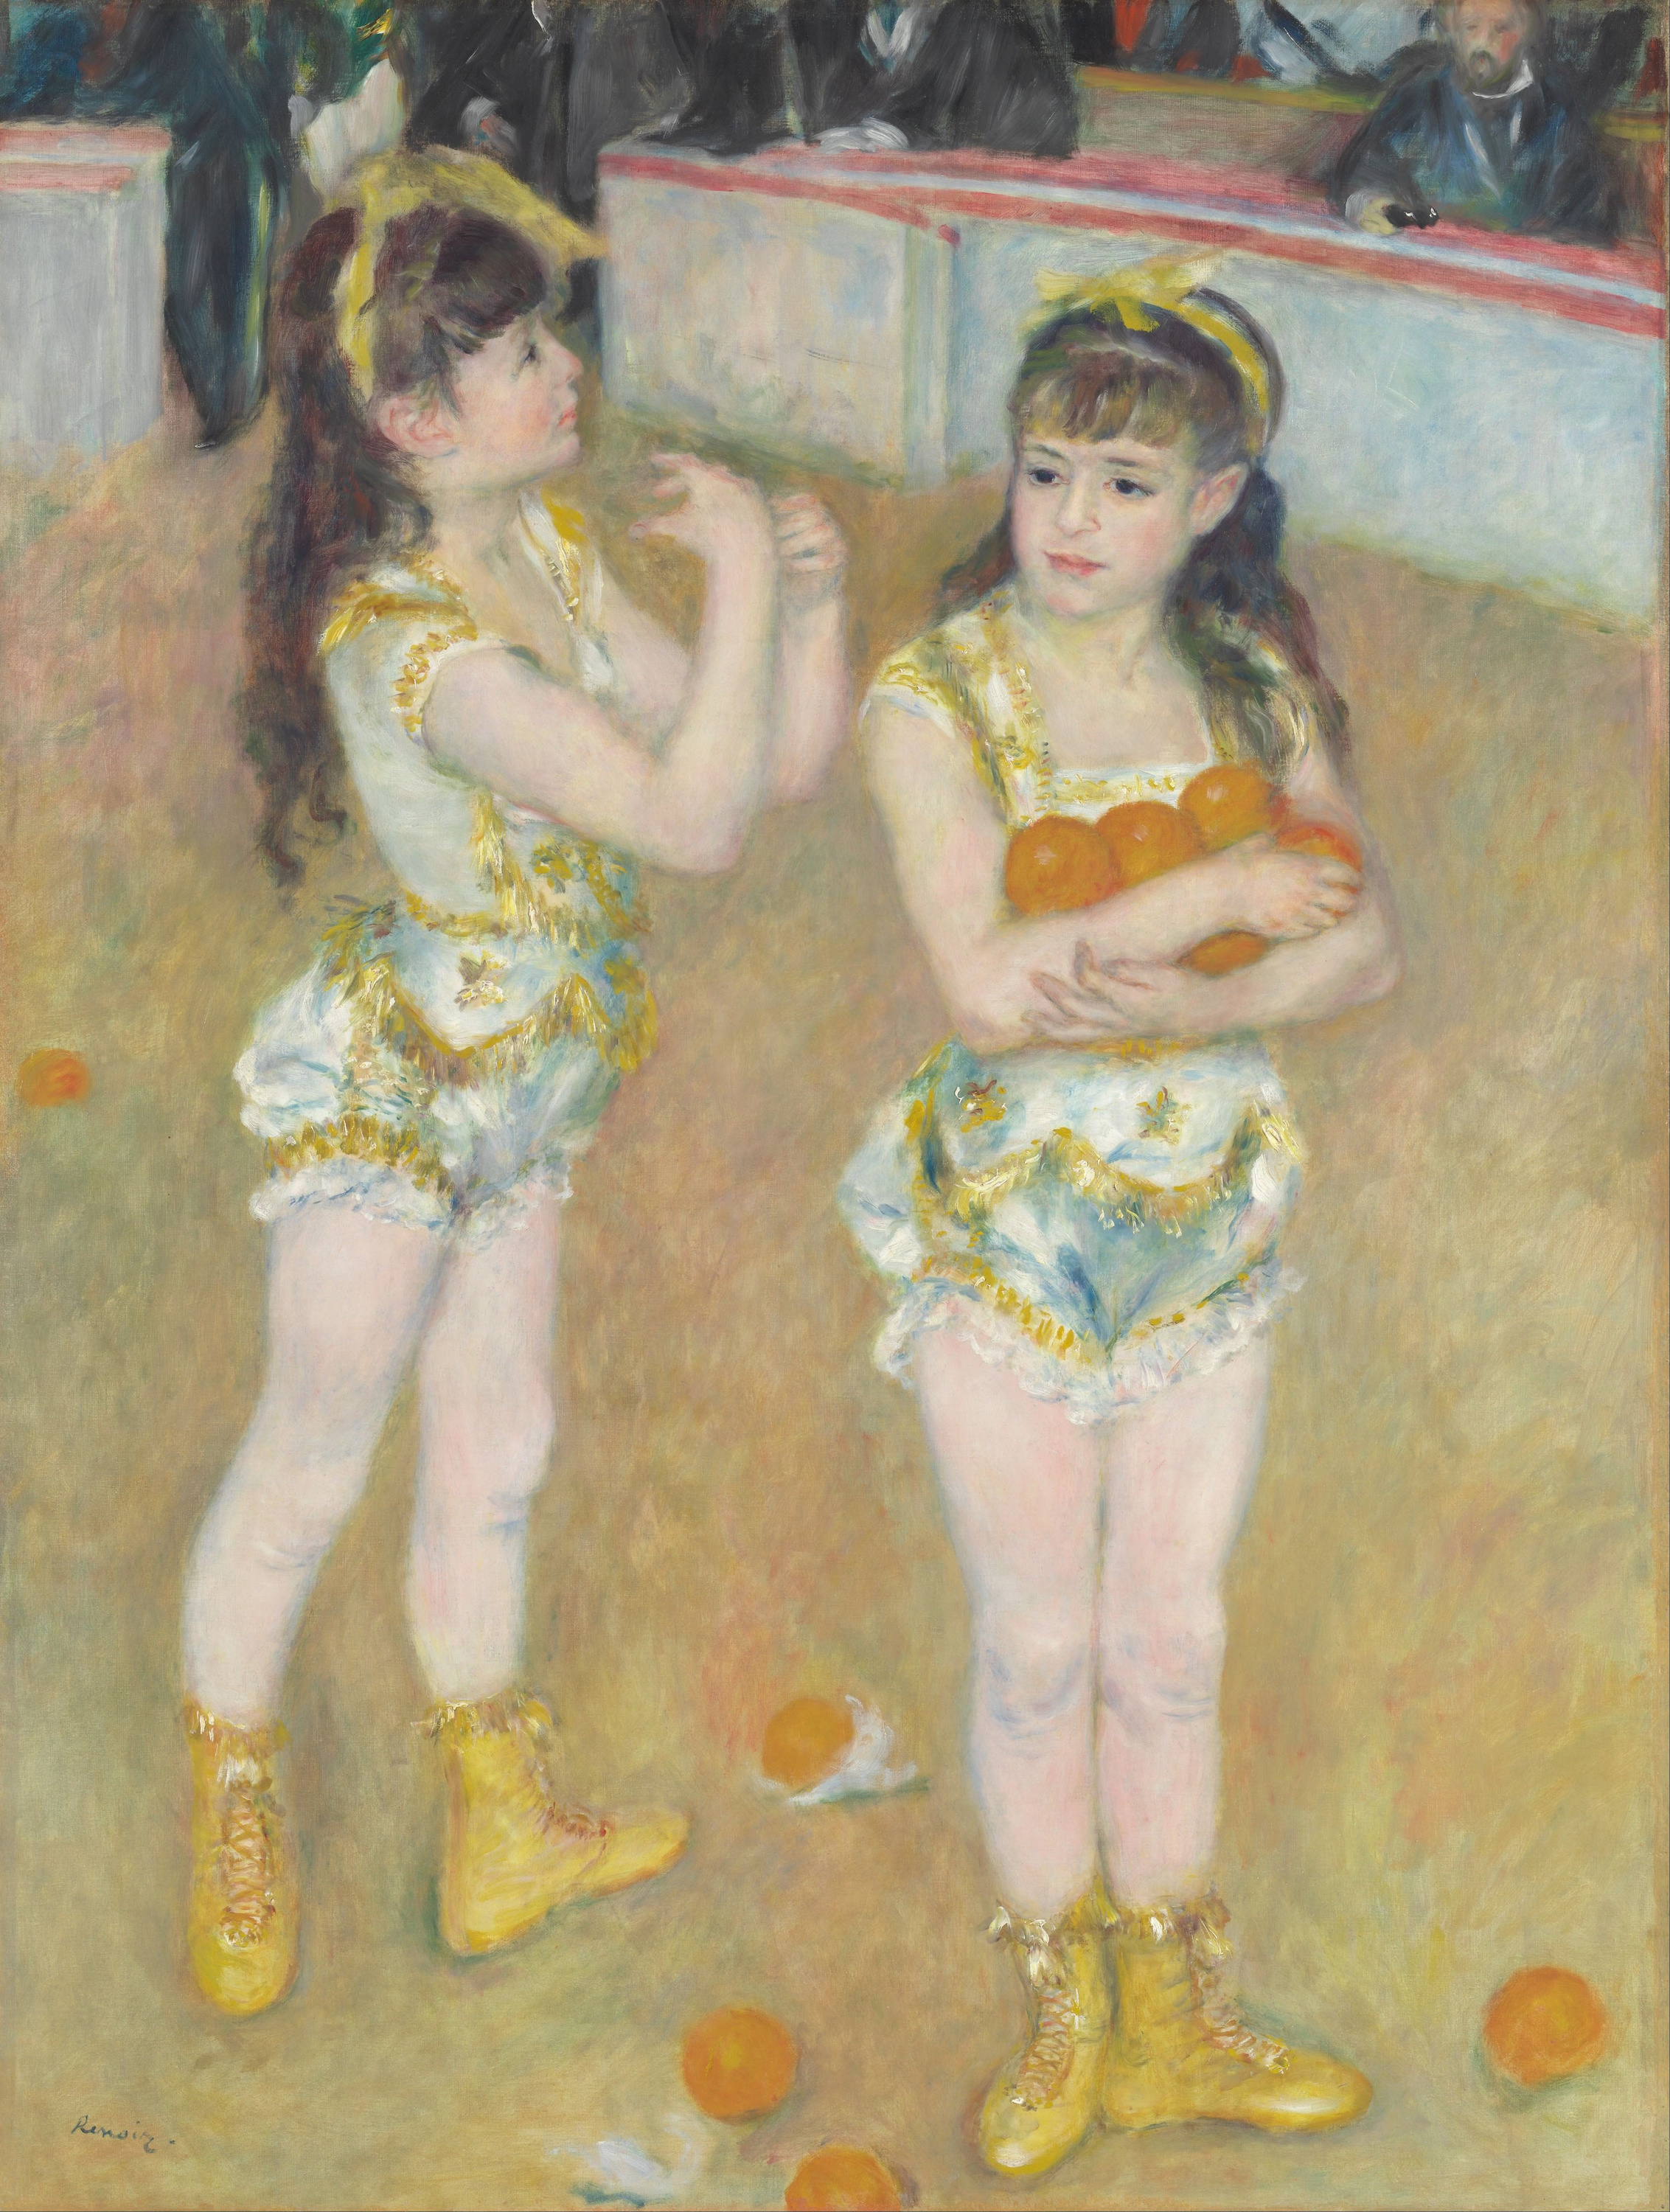 費爾南多馬戲團的雜技演員(法蘭西斯卡和安吉利娜·沃滕伯格) by Pierre-Auguste Renoir - 1879年 - 131.2 × 99.2 cm 